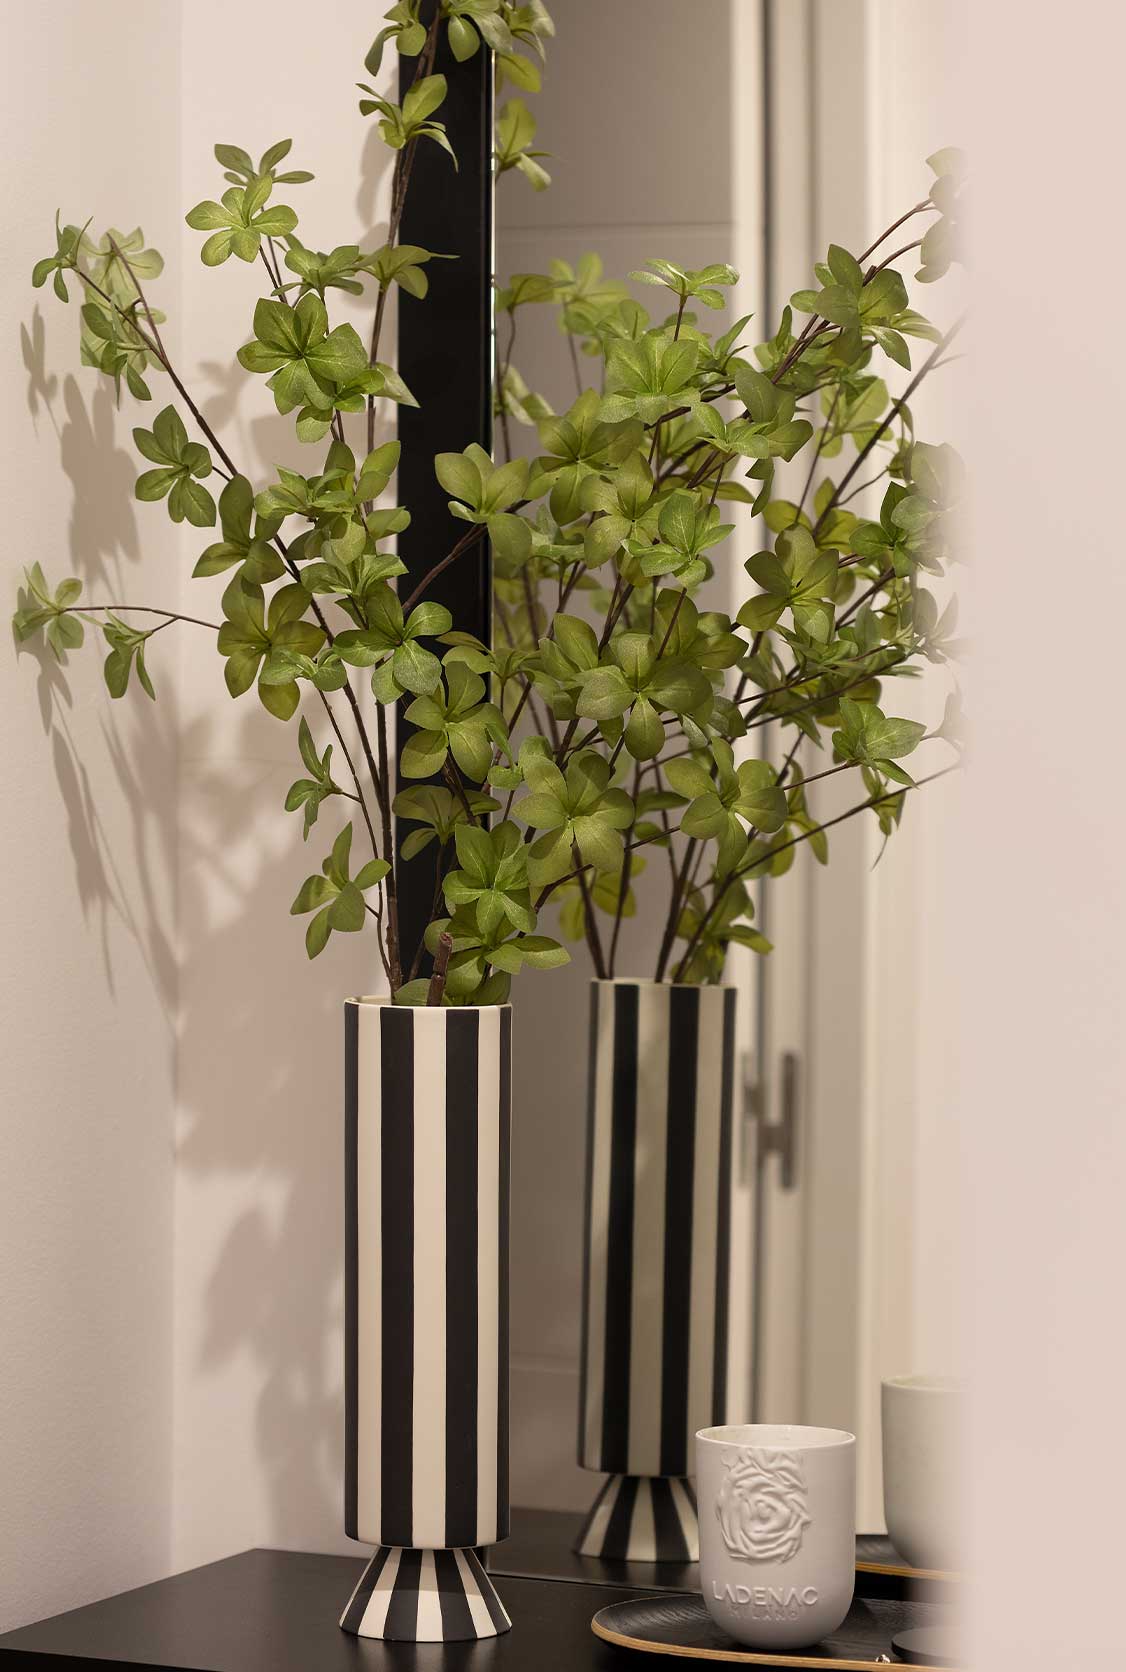 Vase with decorative plants